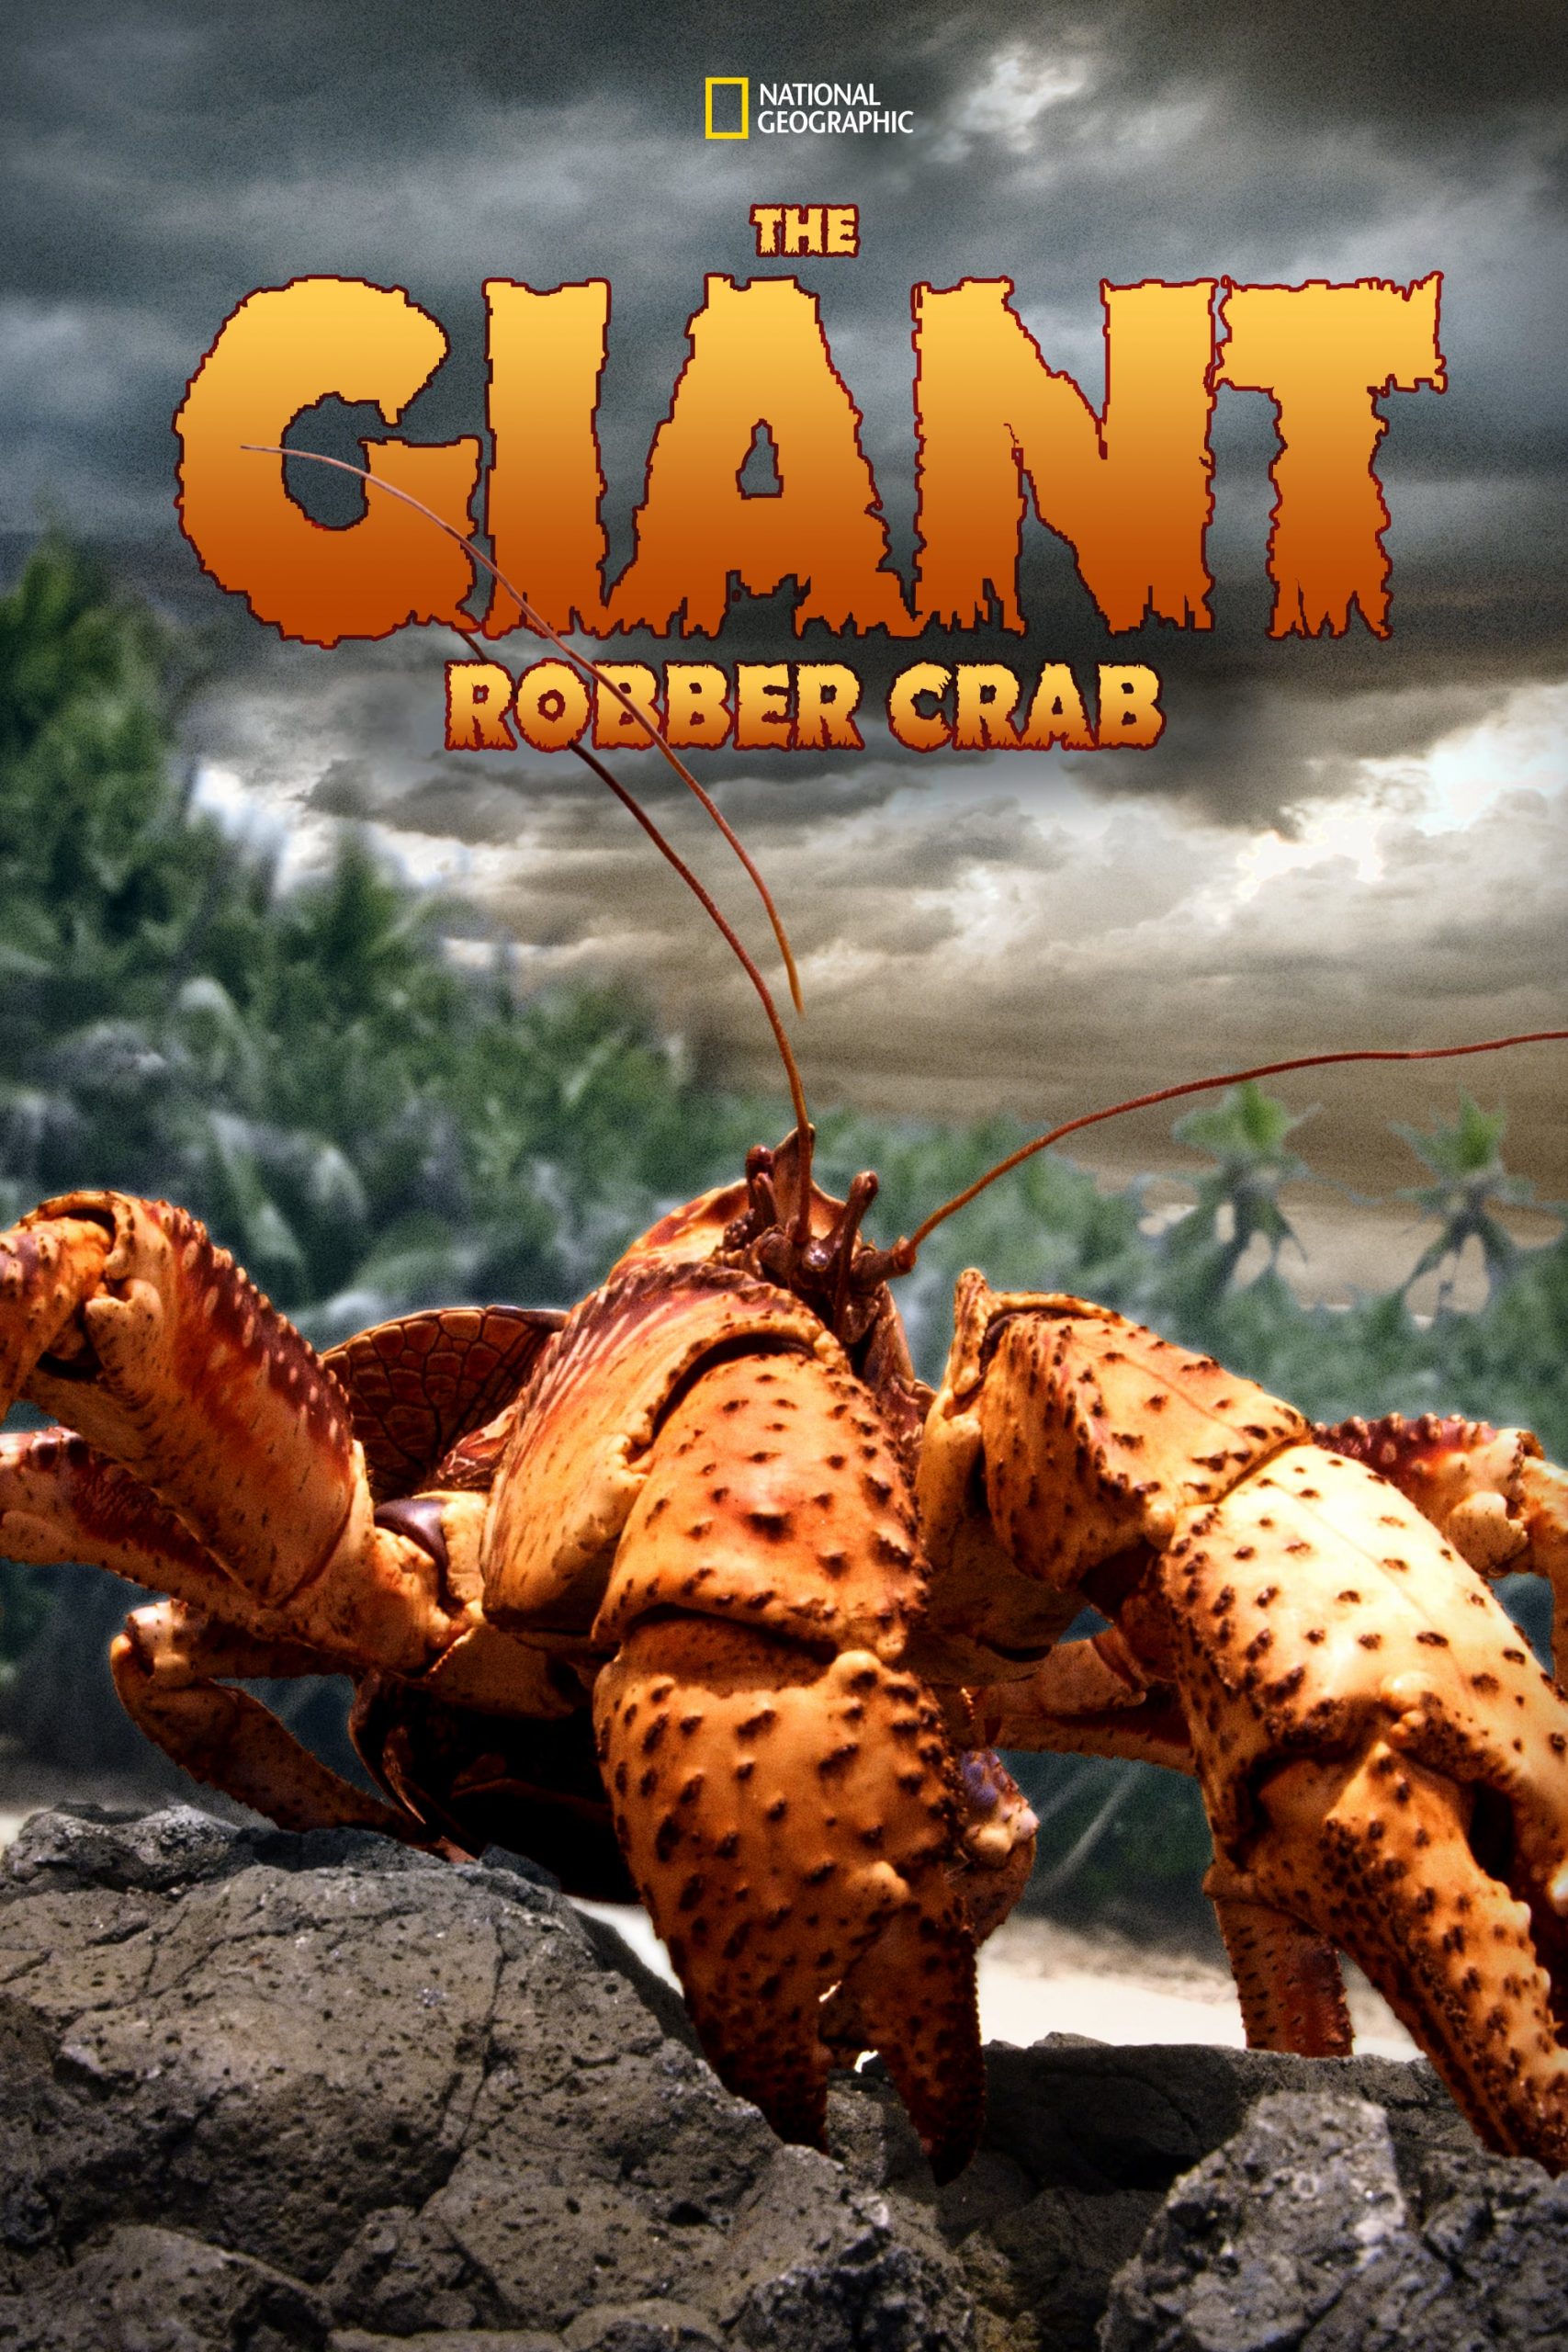 ดูหนังออนไลน์ฟรี The Giant Robber Crab (2019) ปูมะพร้าวแห่งเกาะคริสต์มาส หนังเต็มเรื่อง หนังมาสเตอร์ ดูหนังHD ดูหนังออนไลน์ ดูหนังใหม่